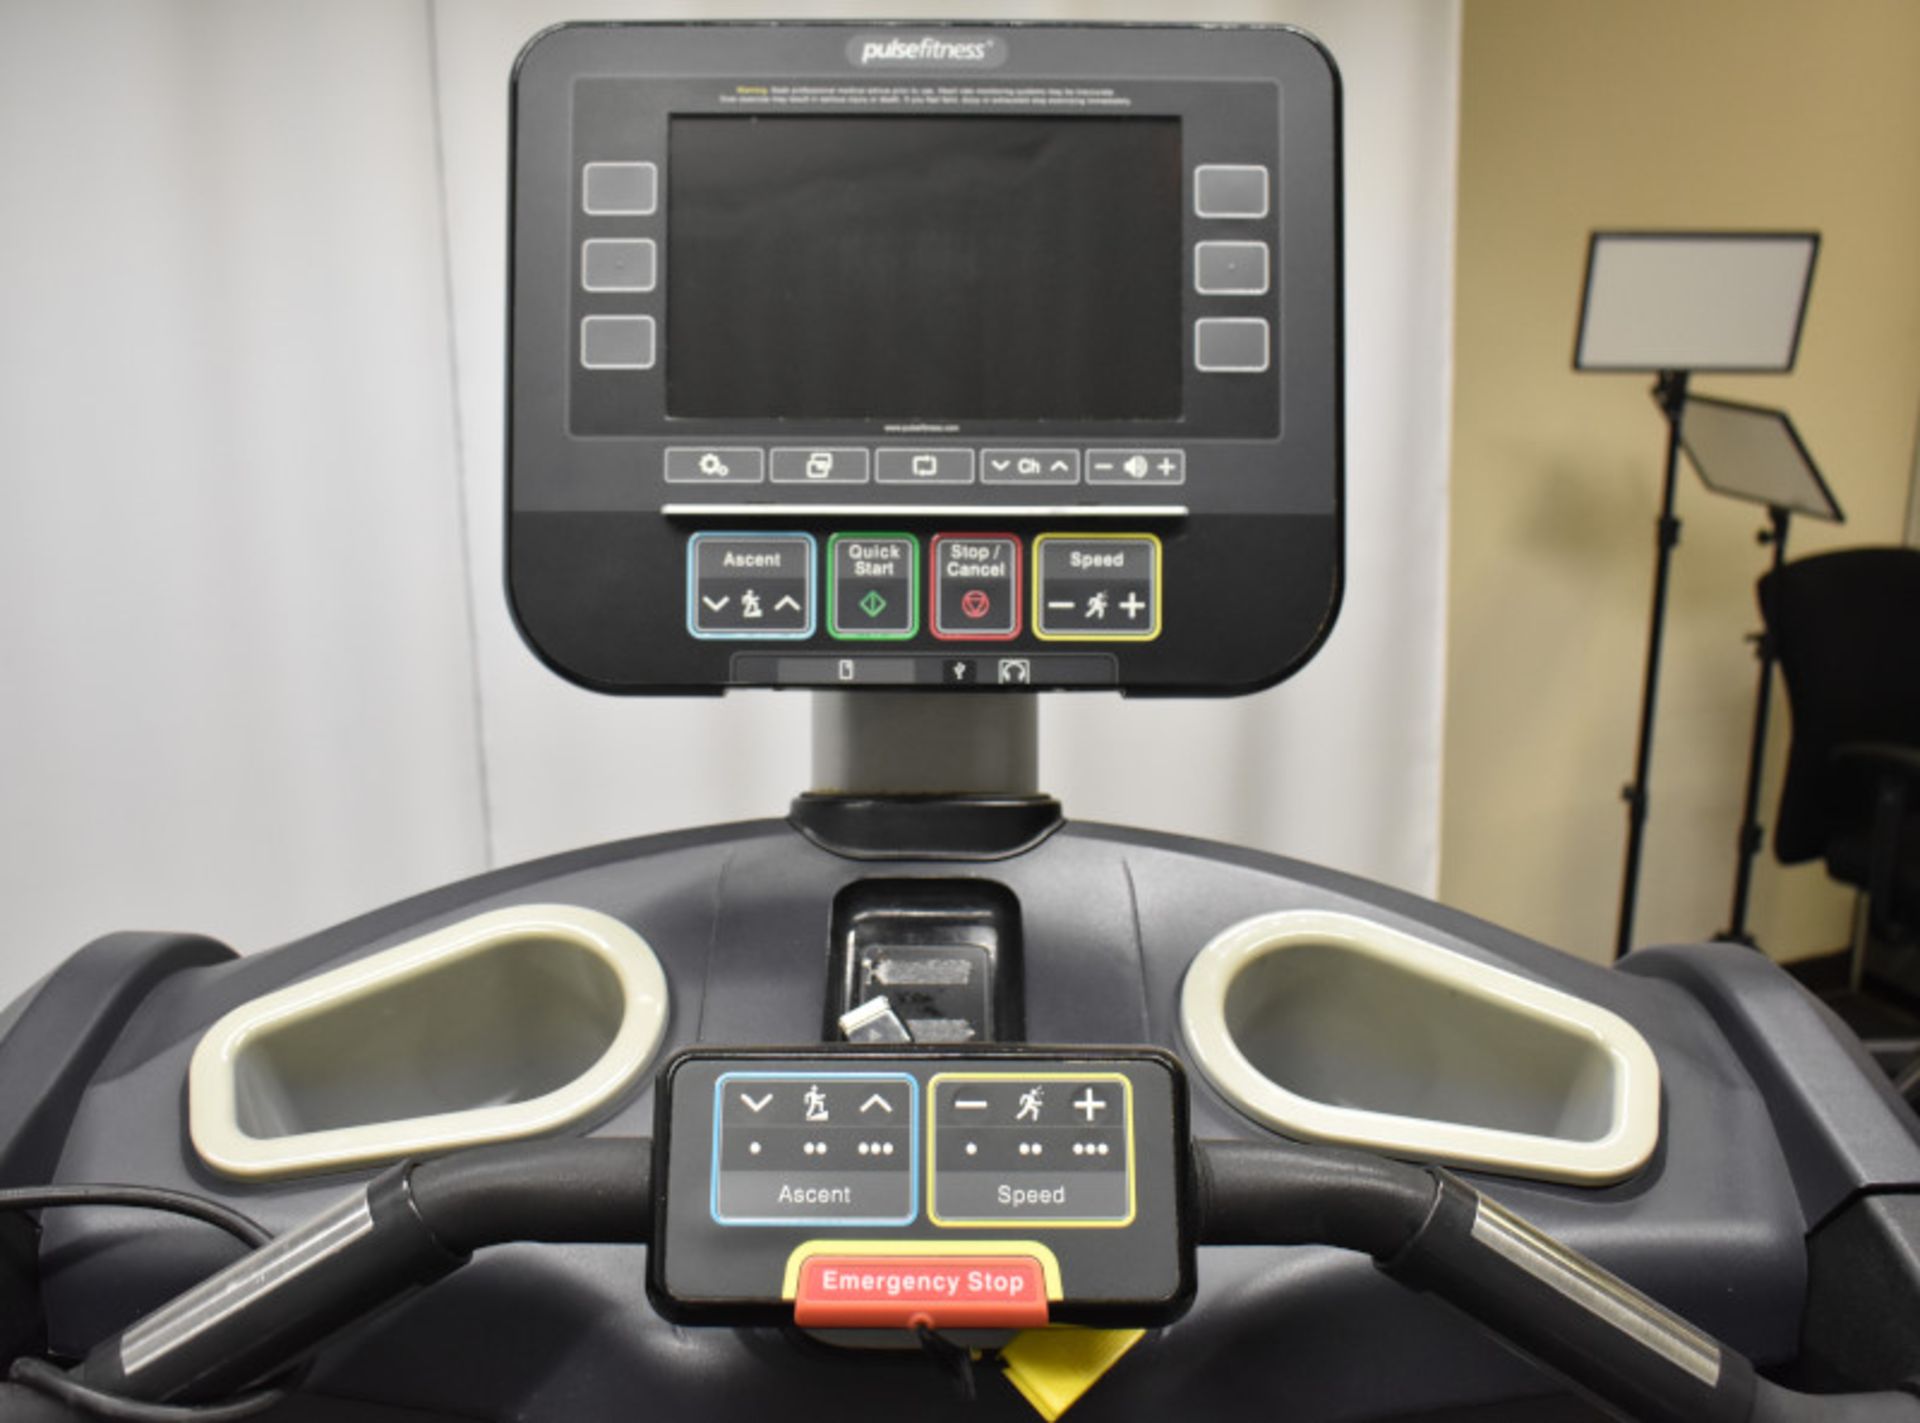 Pulse Fitness Run 260G Treadmill - Image 4 of 14